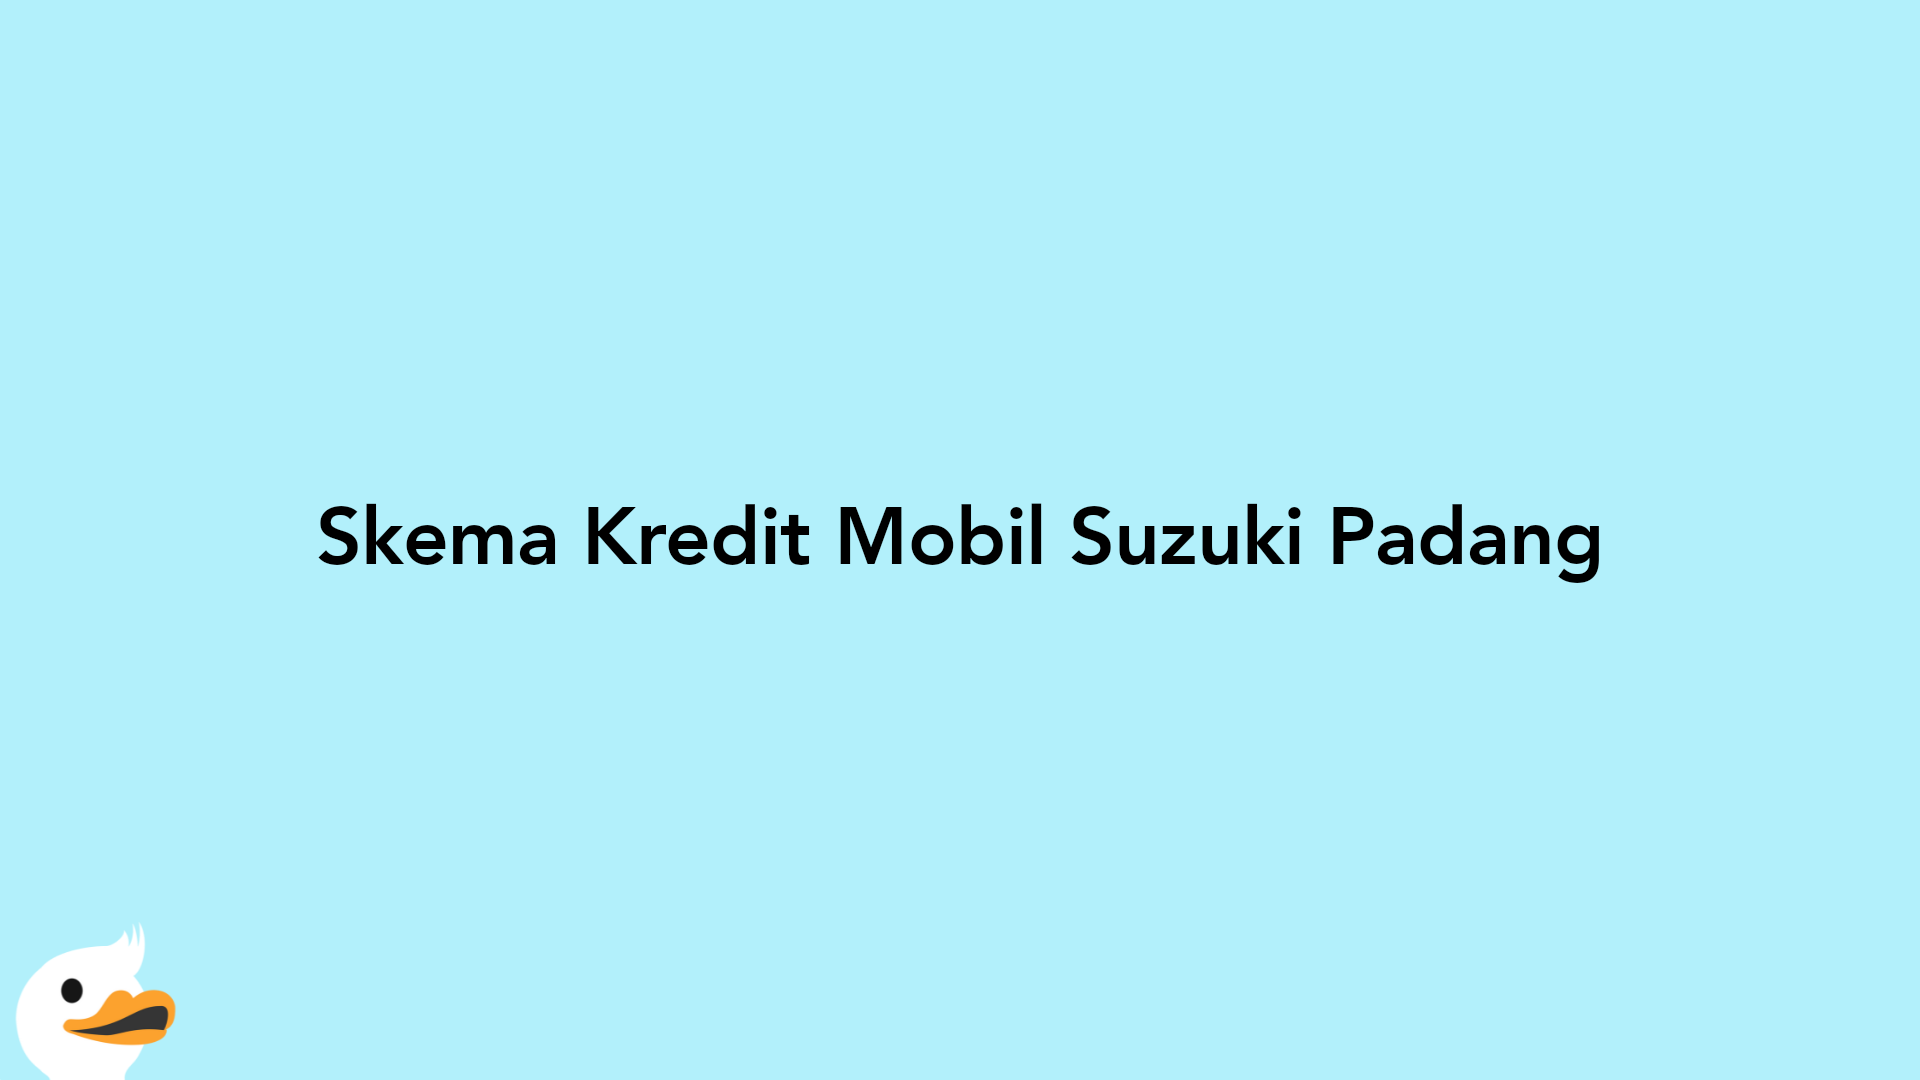 Skema Kredit Mobil Suzuki Padang